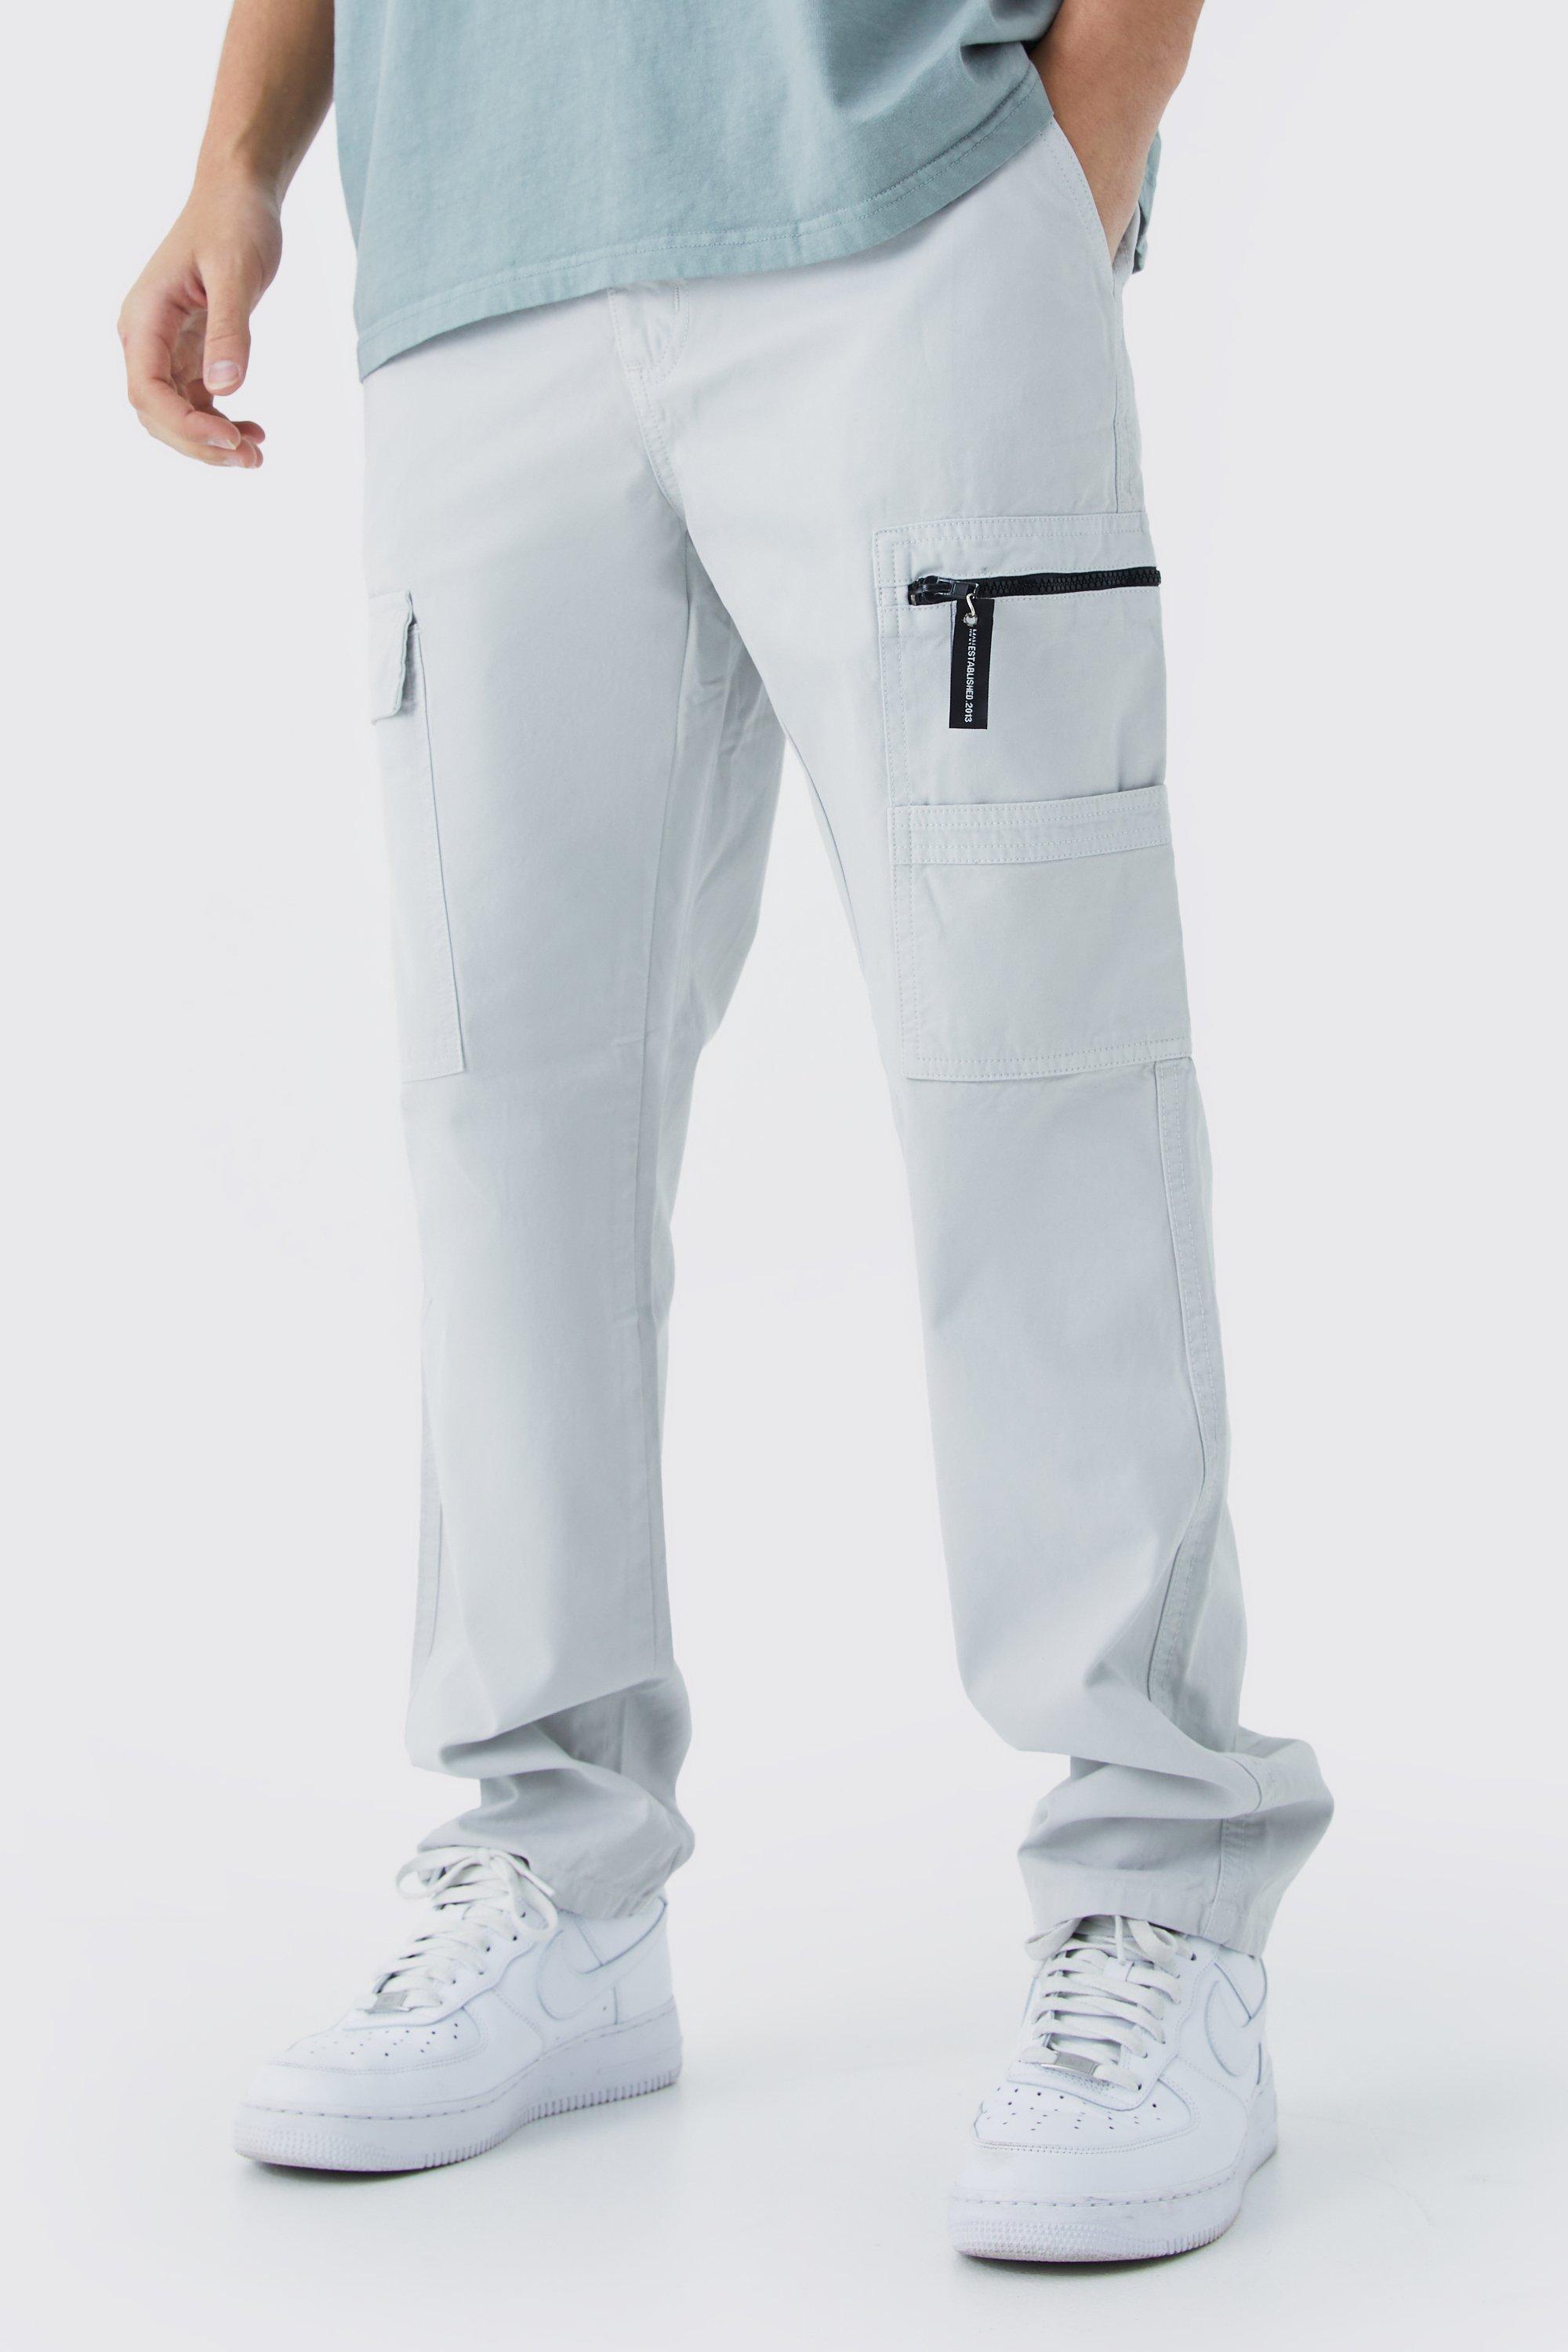 pantalon cargo droit à logo zippé homme - gris - 36, gris